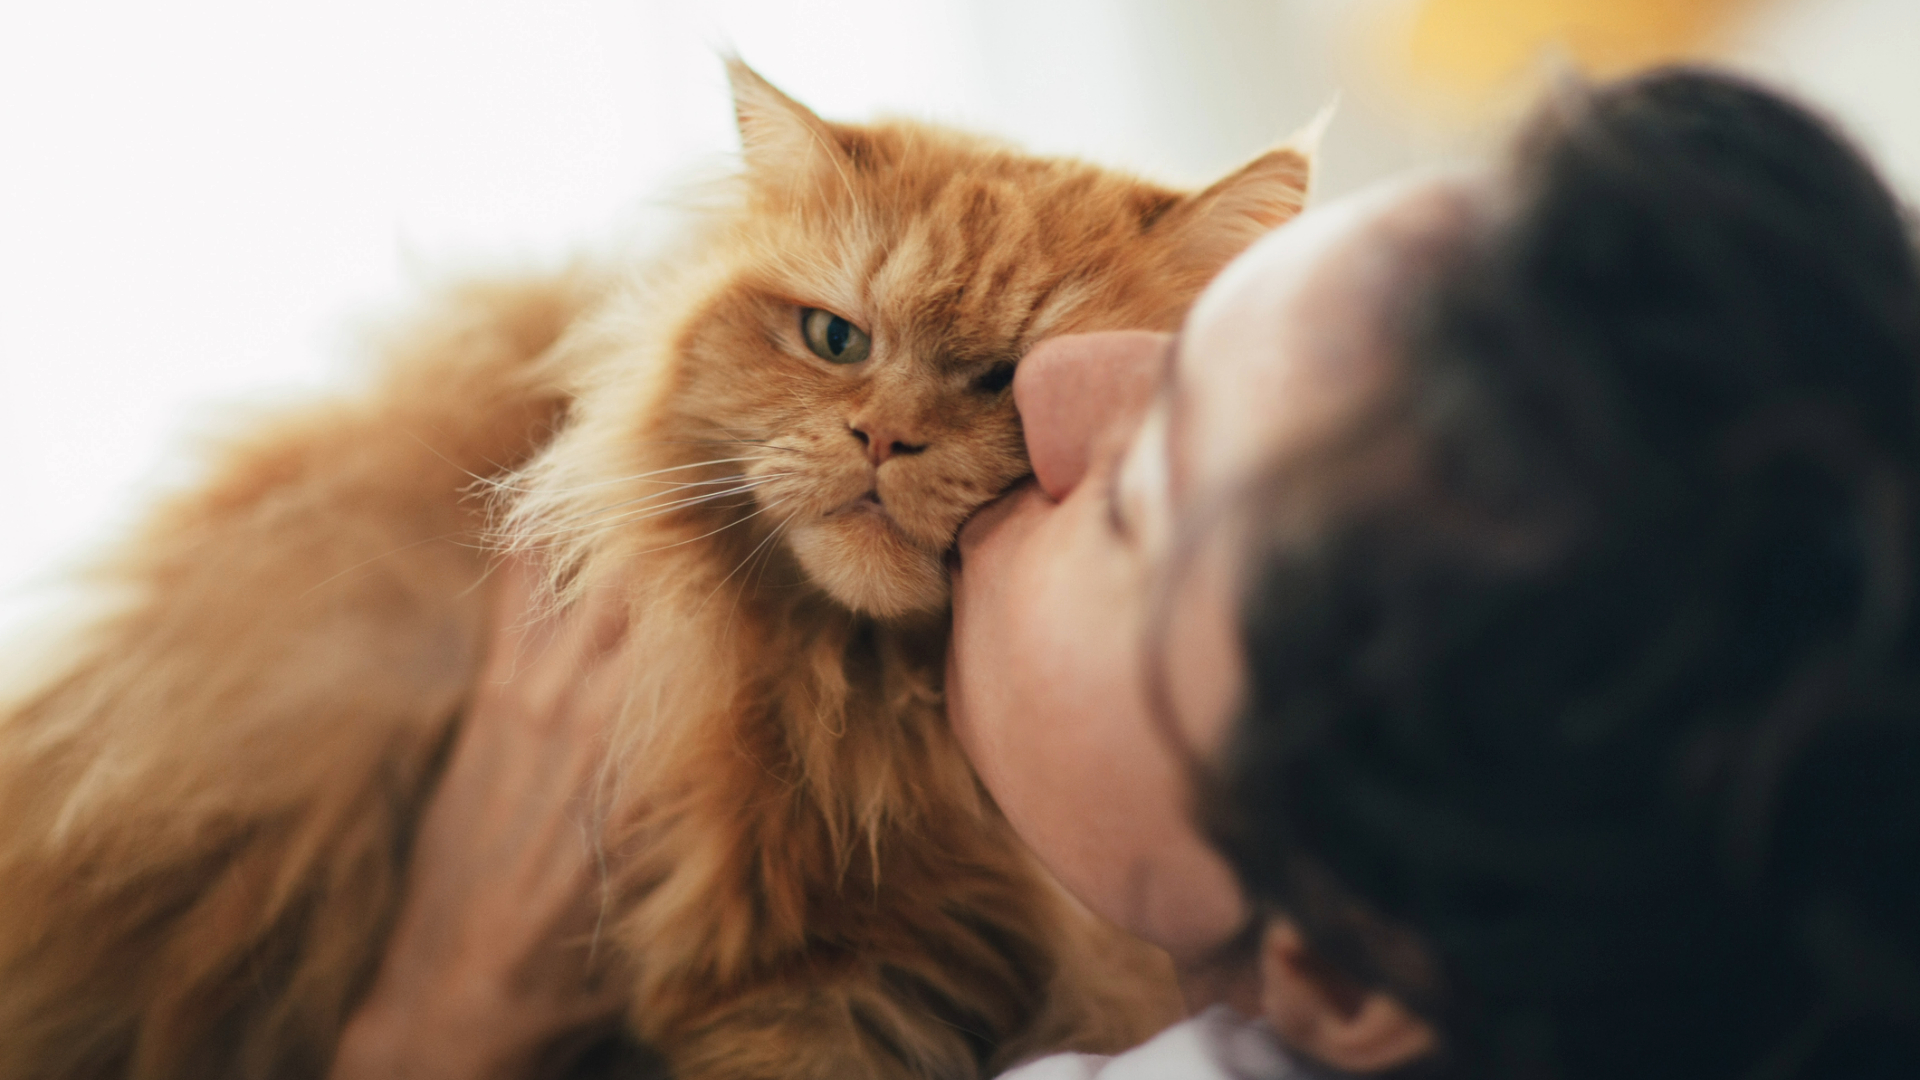 Owner kissing ginger cat